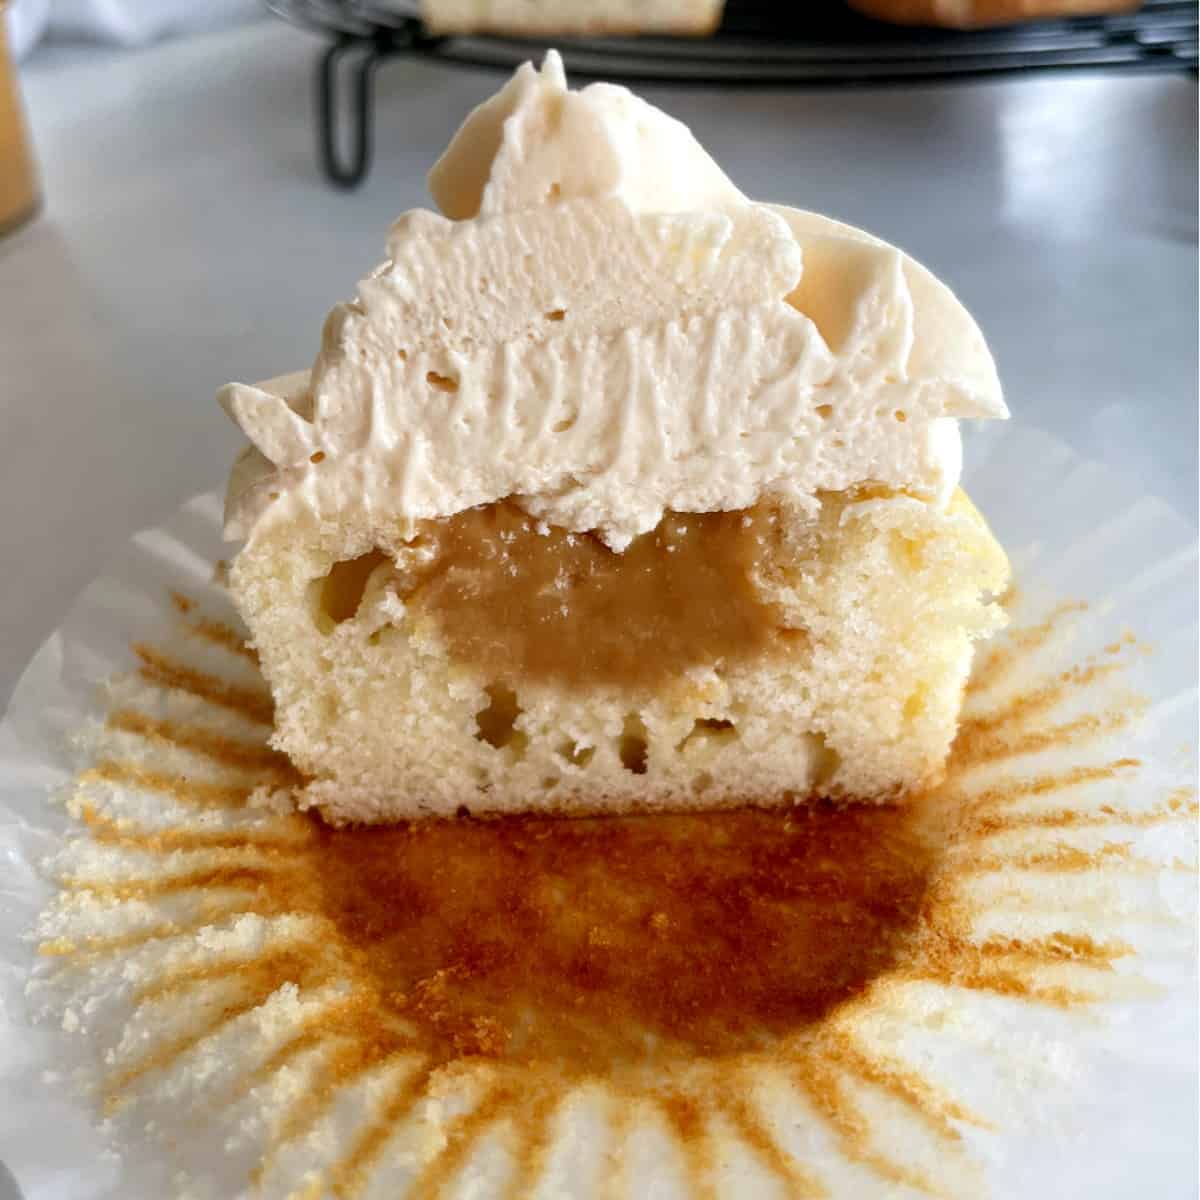 caramel filled cupcake cut in half